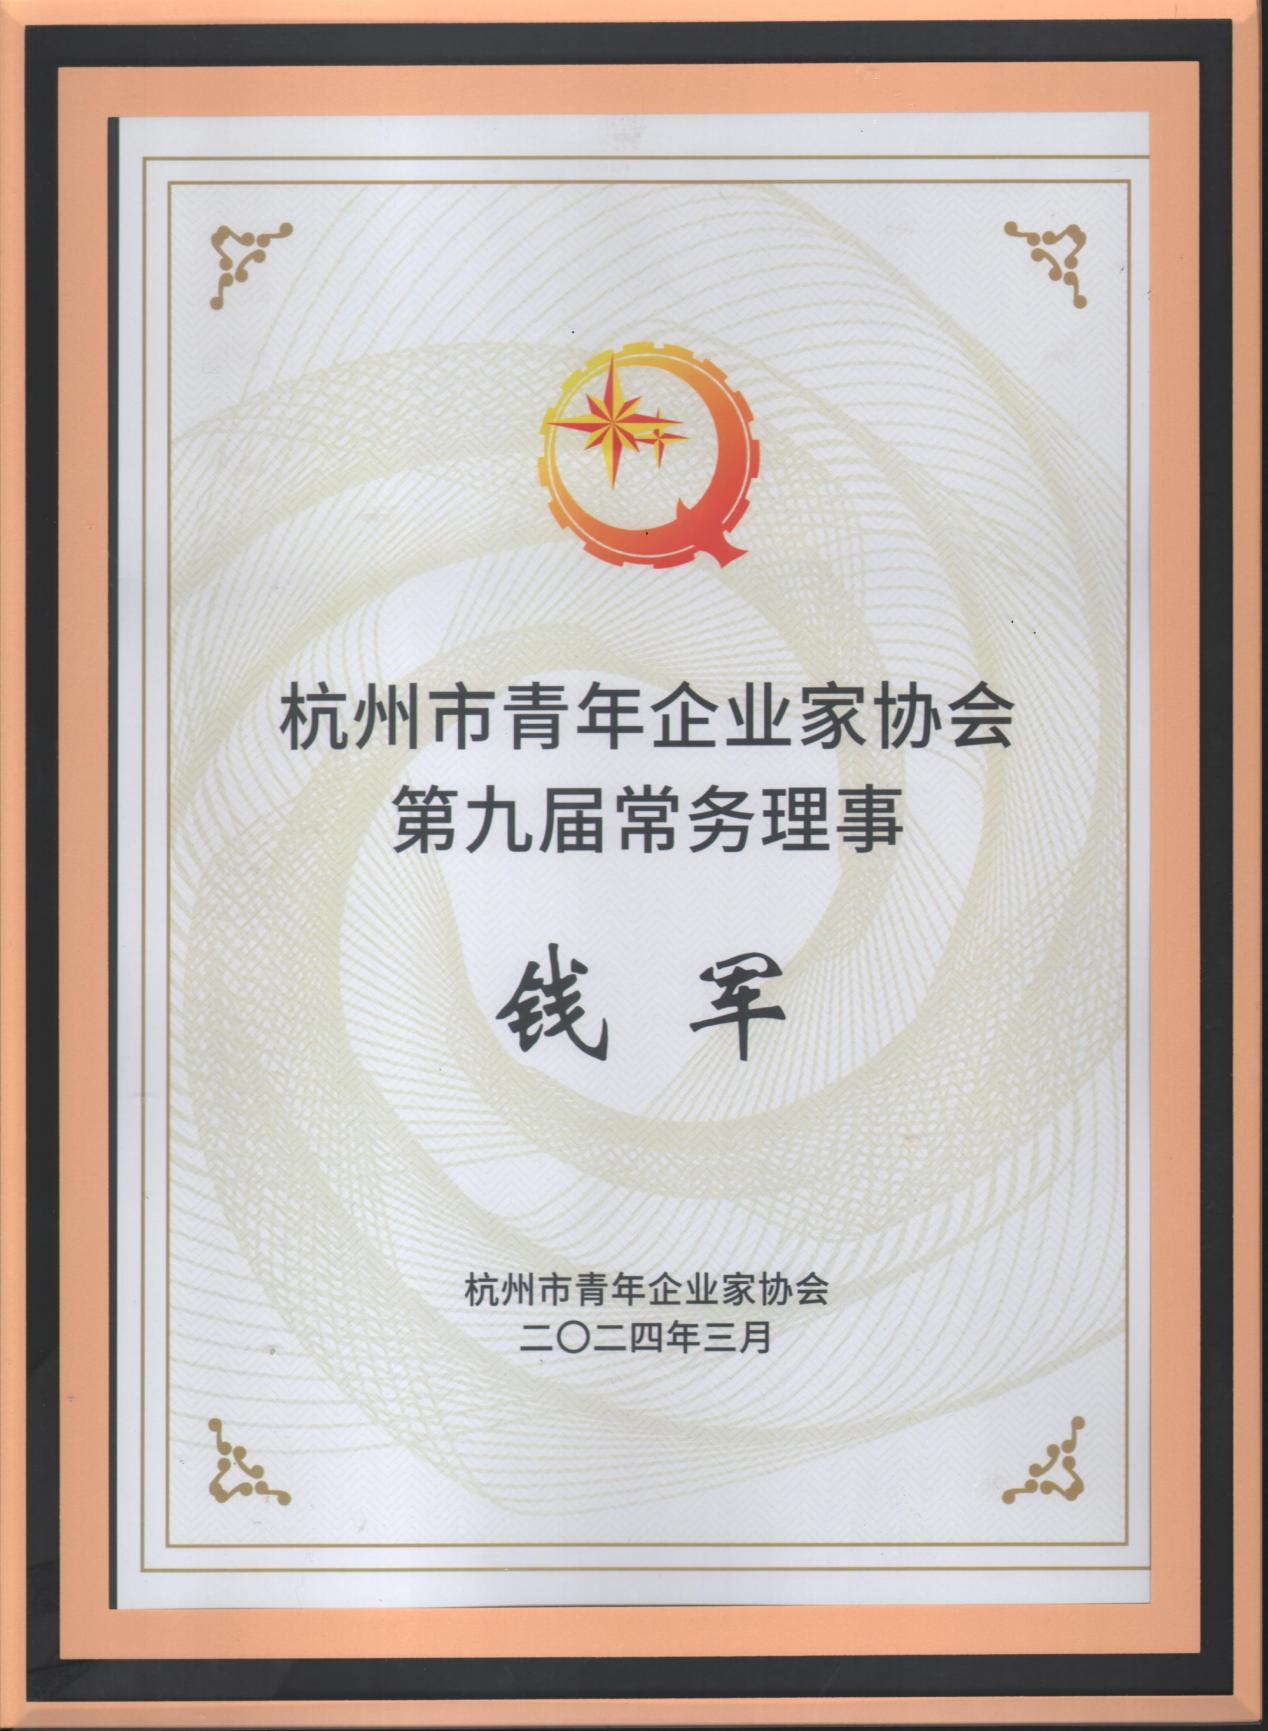 钱江商城受邀参加杭州青年企业家协会九届二次常务理事会议